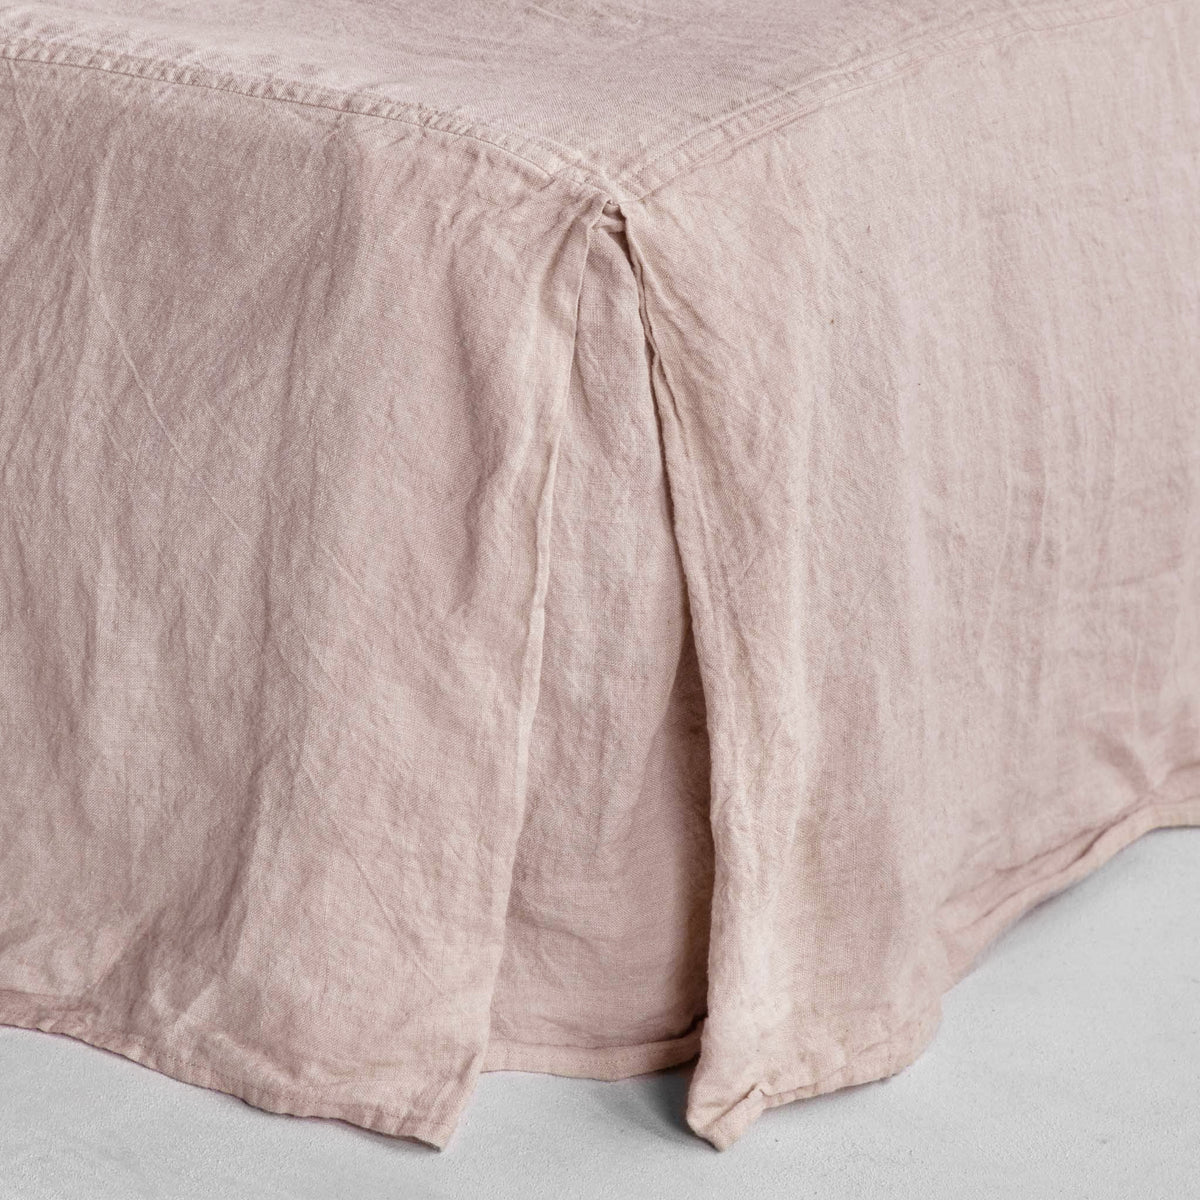 Basix Linen Bed Skirt - Floss